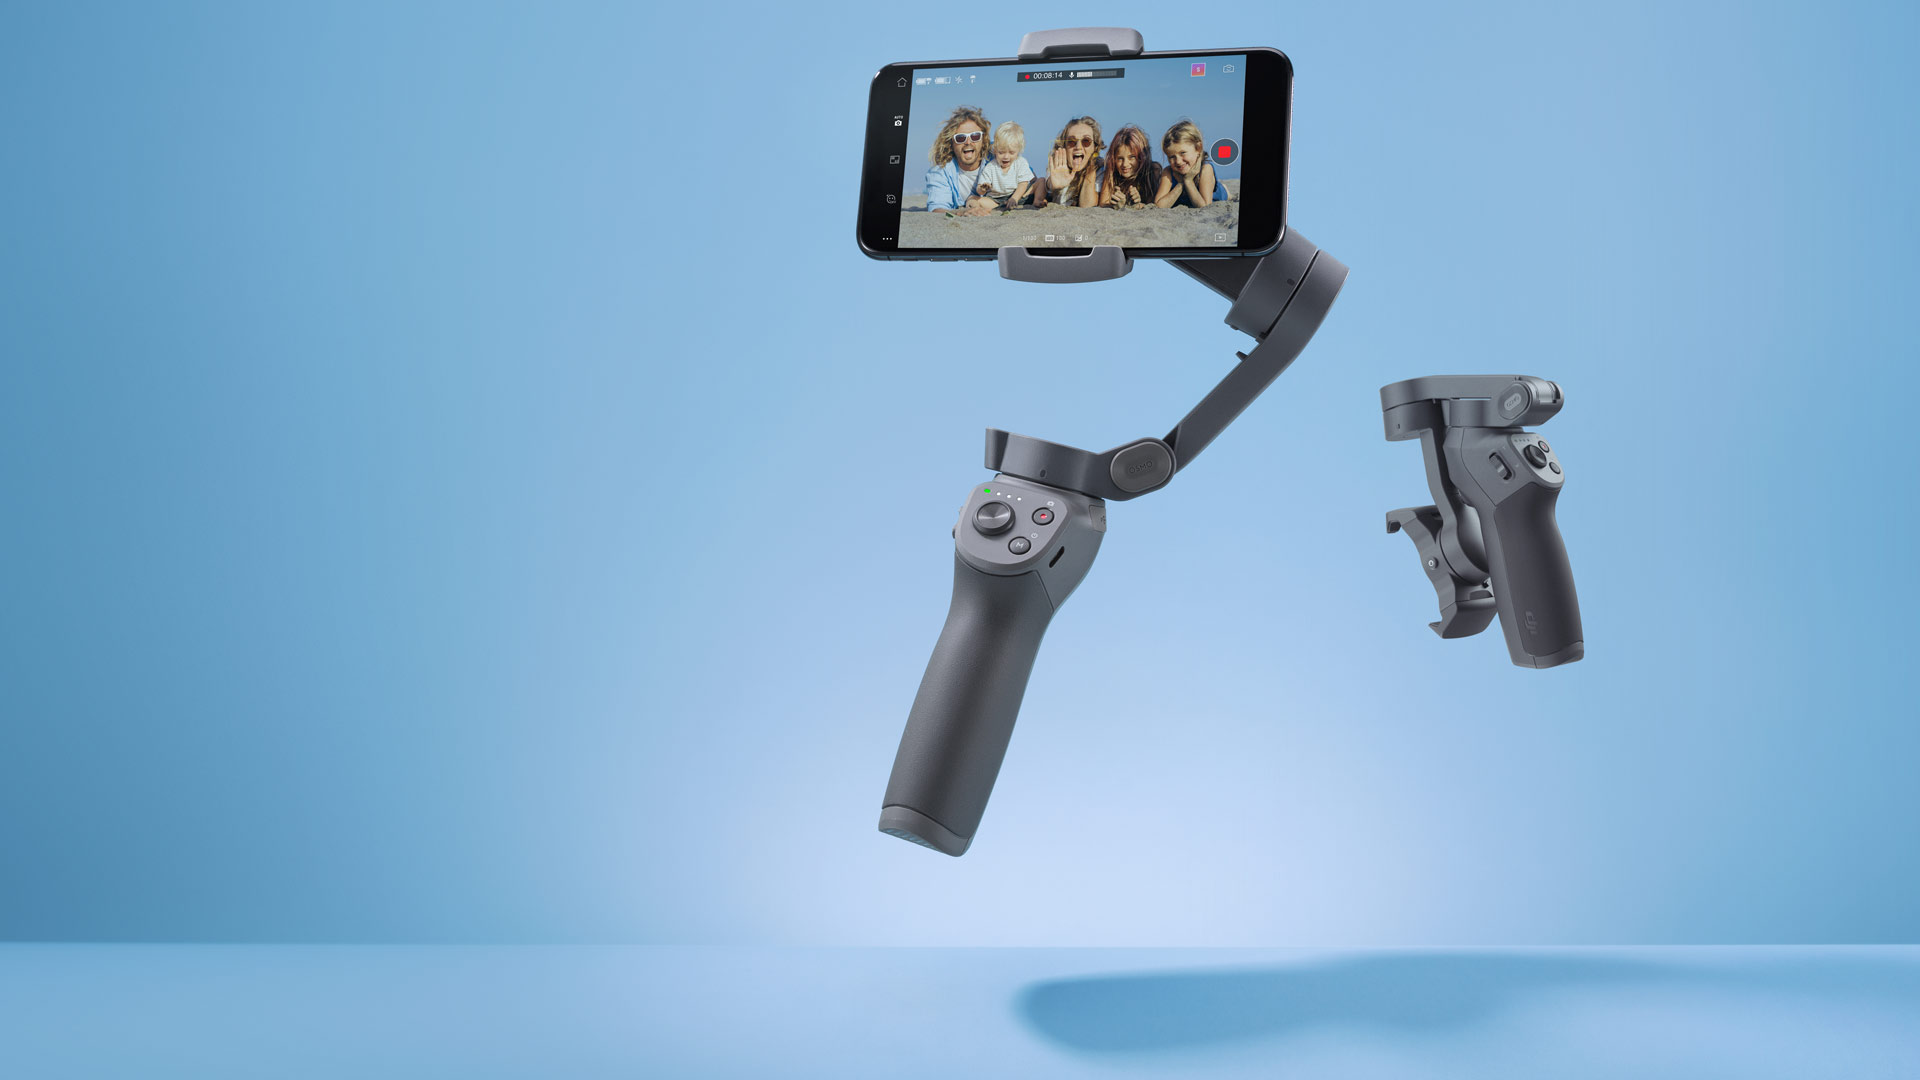 DJI Osmo Mobile 3 Smart Lipat Gimbal diluncurkan untuk Smartphone